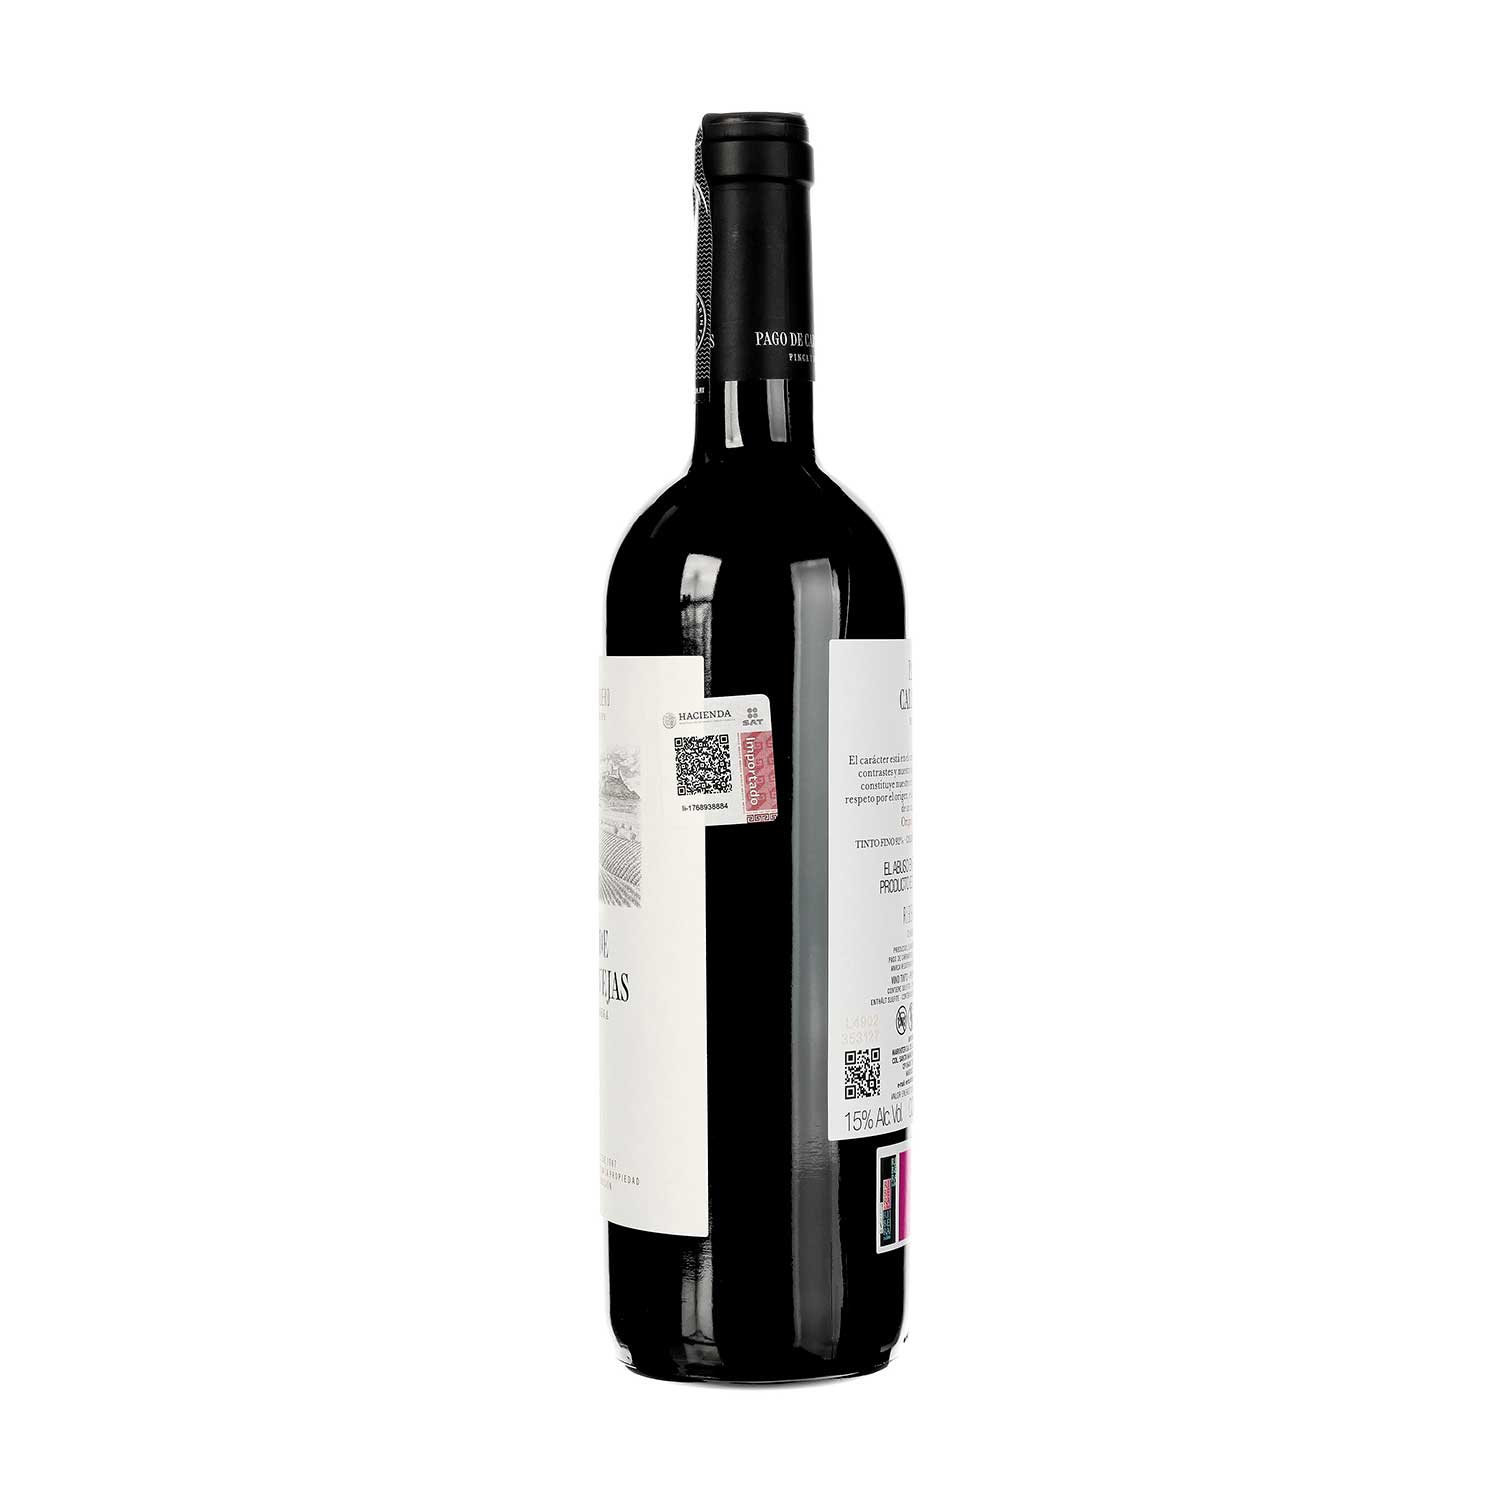 Vino Tinto - Pago de Carraovejas 2021 de 750 ml-España